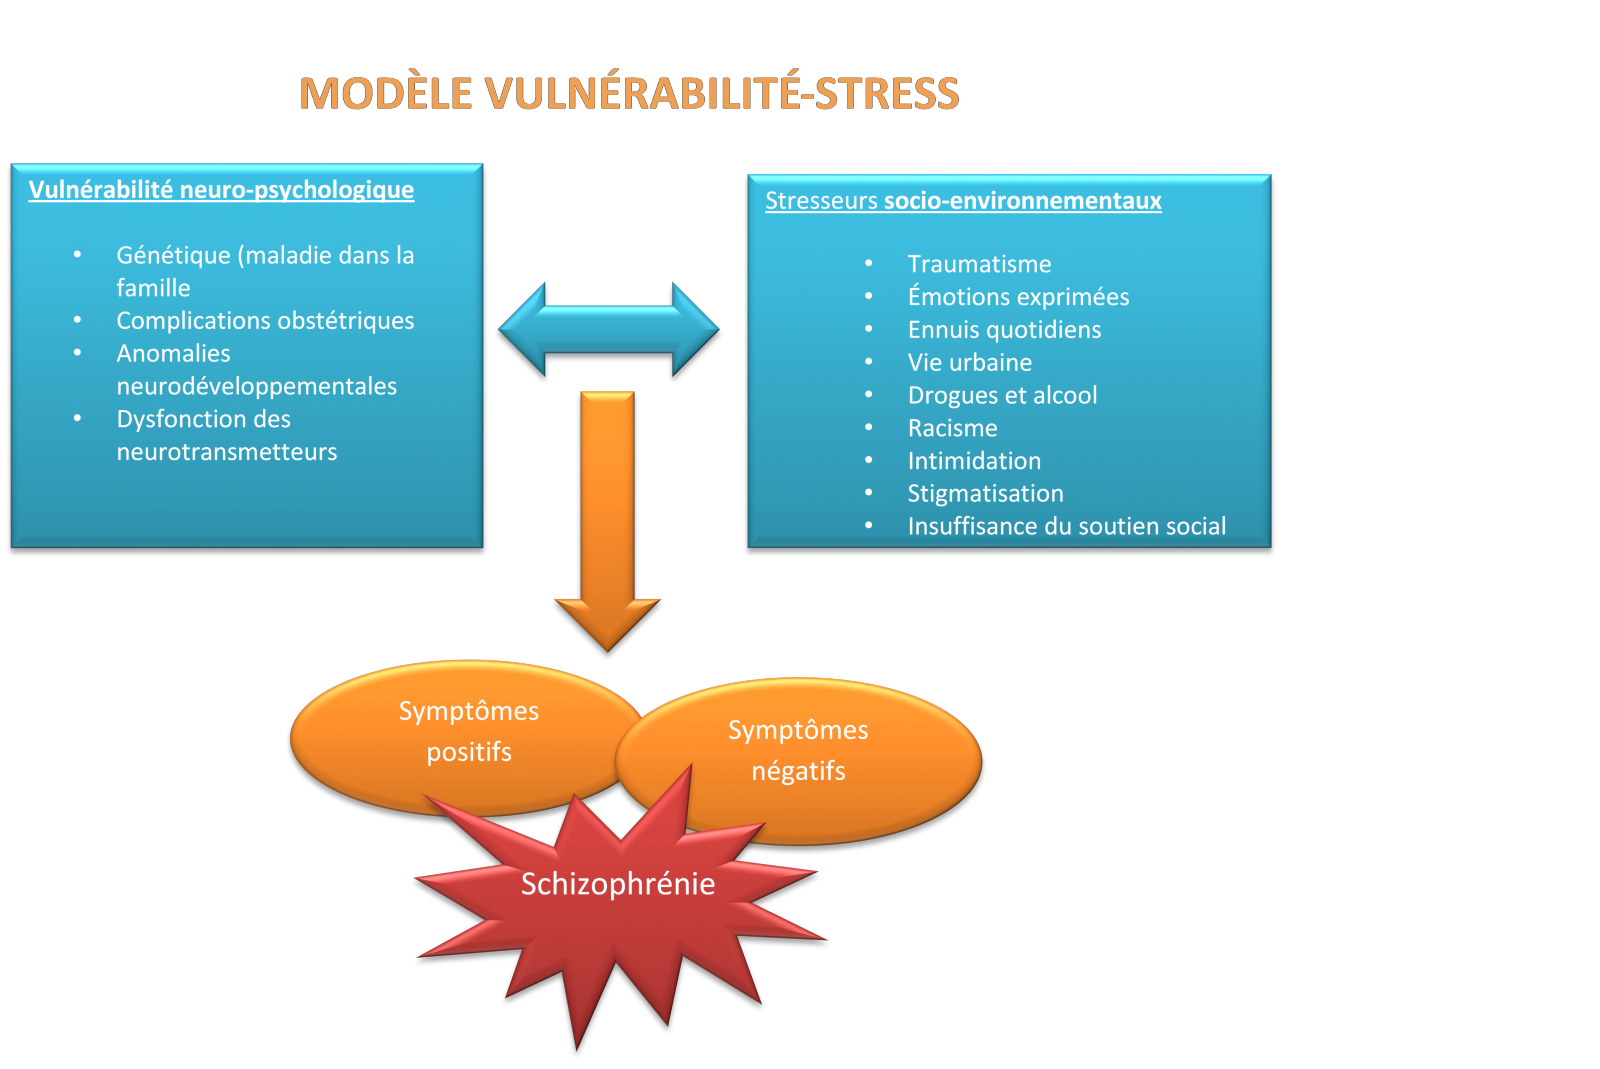 Modèle Vulnérabilité-Stress